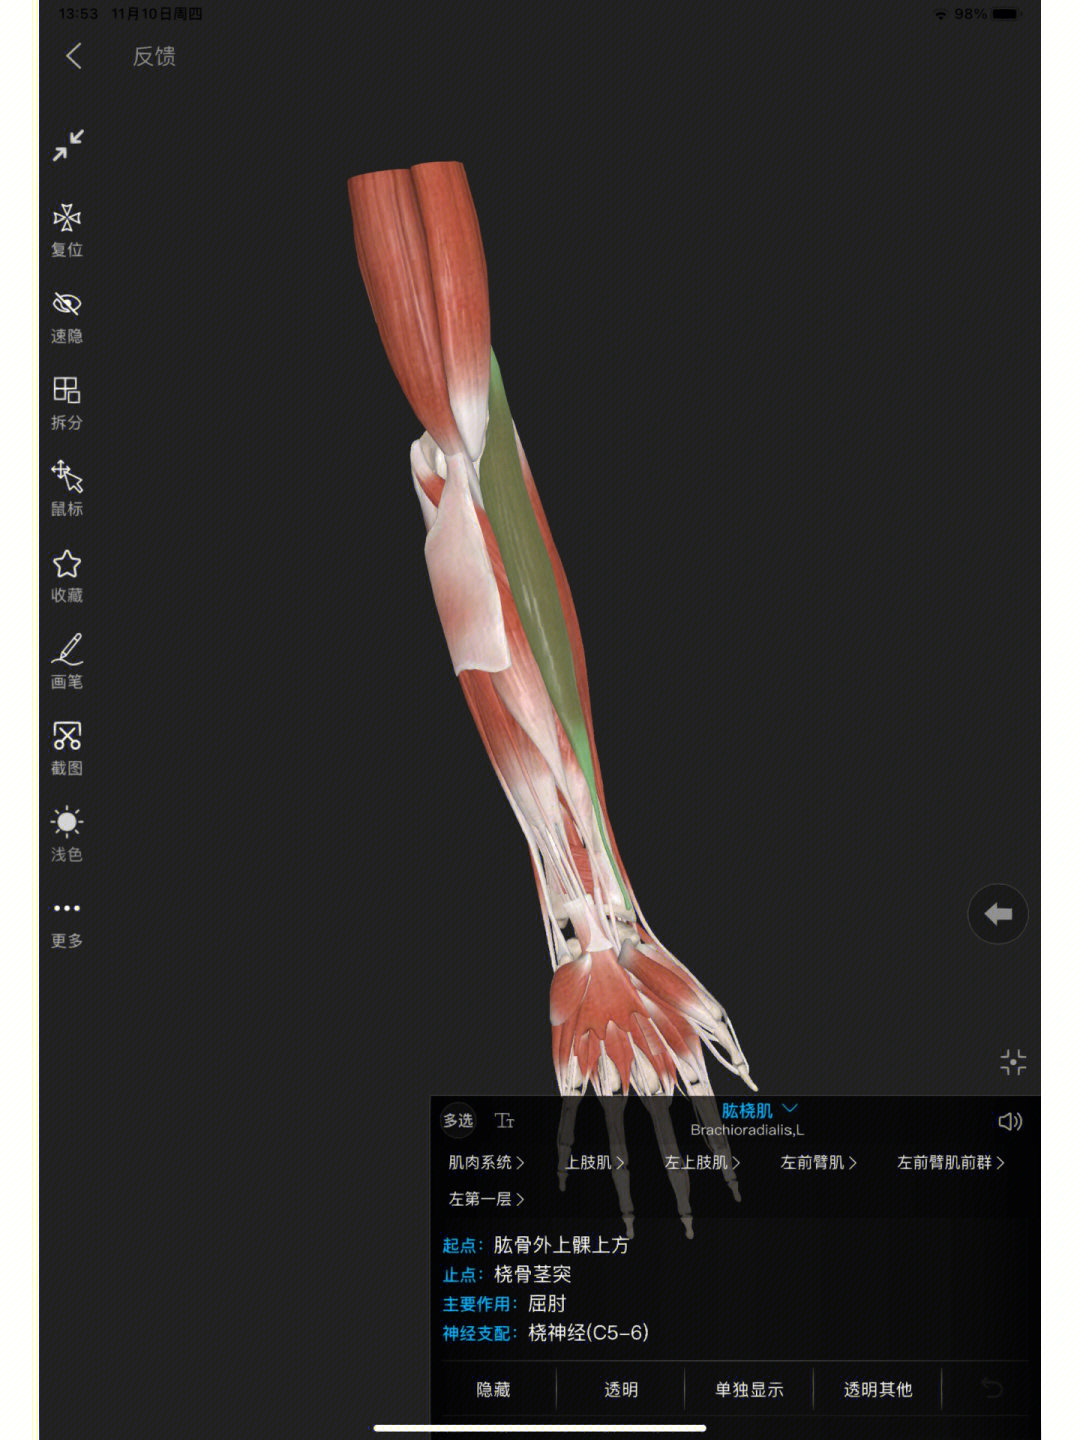 肱桡肌,位于前臂肌的最外侧皮下,呈长扁形近固点时,可使前臂屈